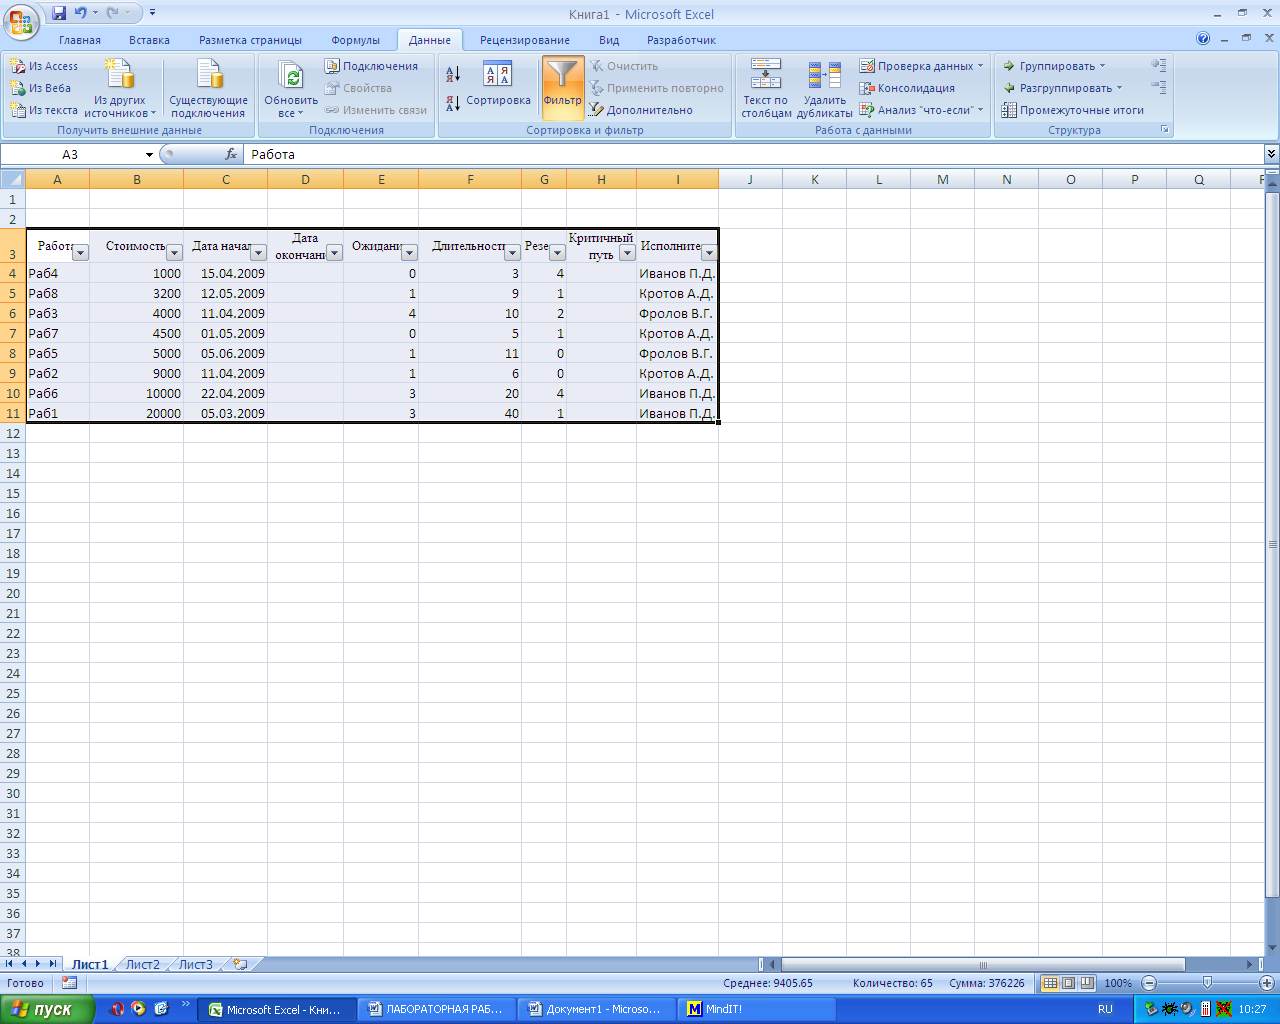 Практические работы в Microsoft Office Excel 2007